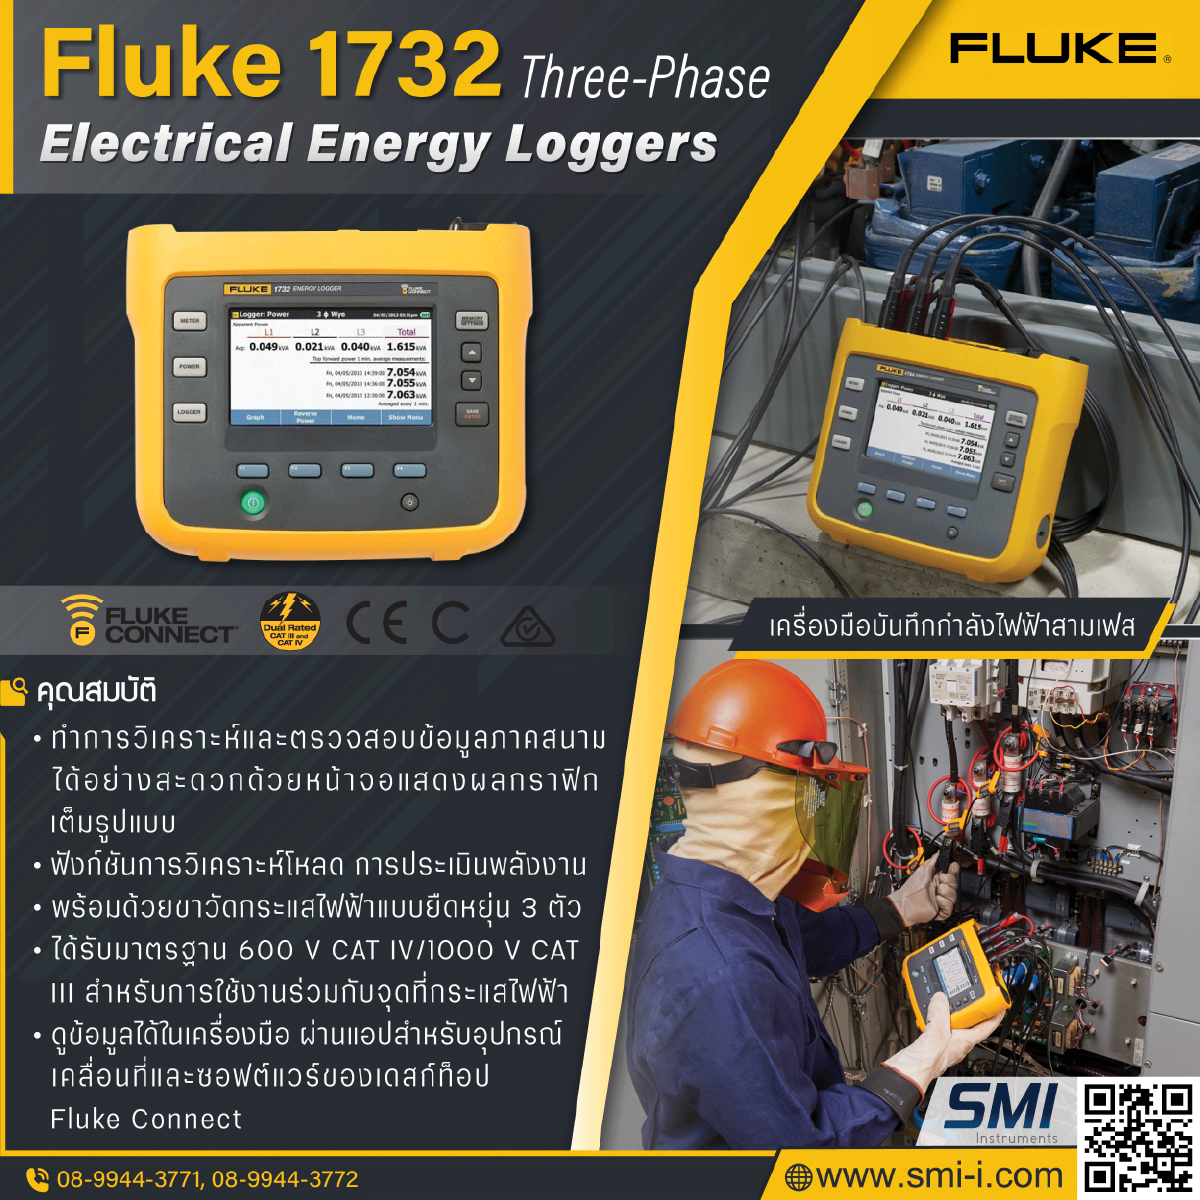 SMI info FLUKE 1732/INTL Energy Logger (International Version)